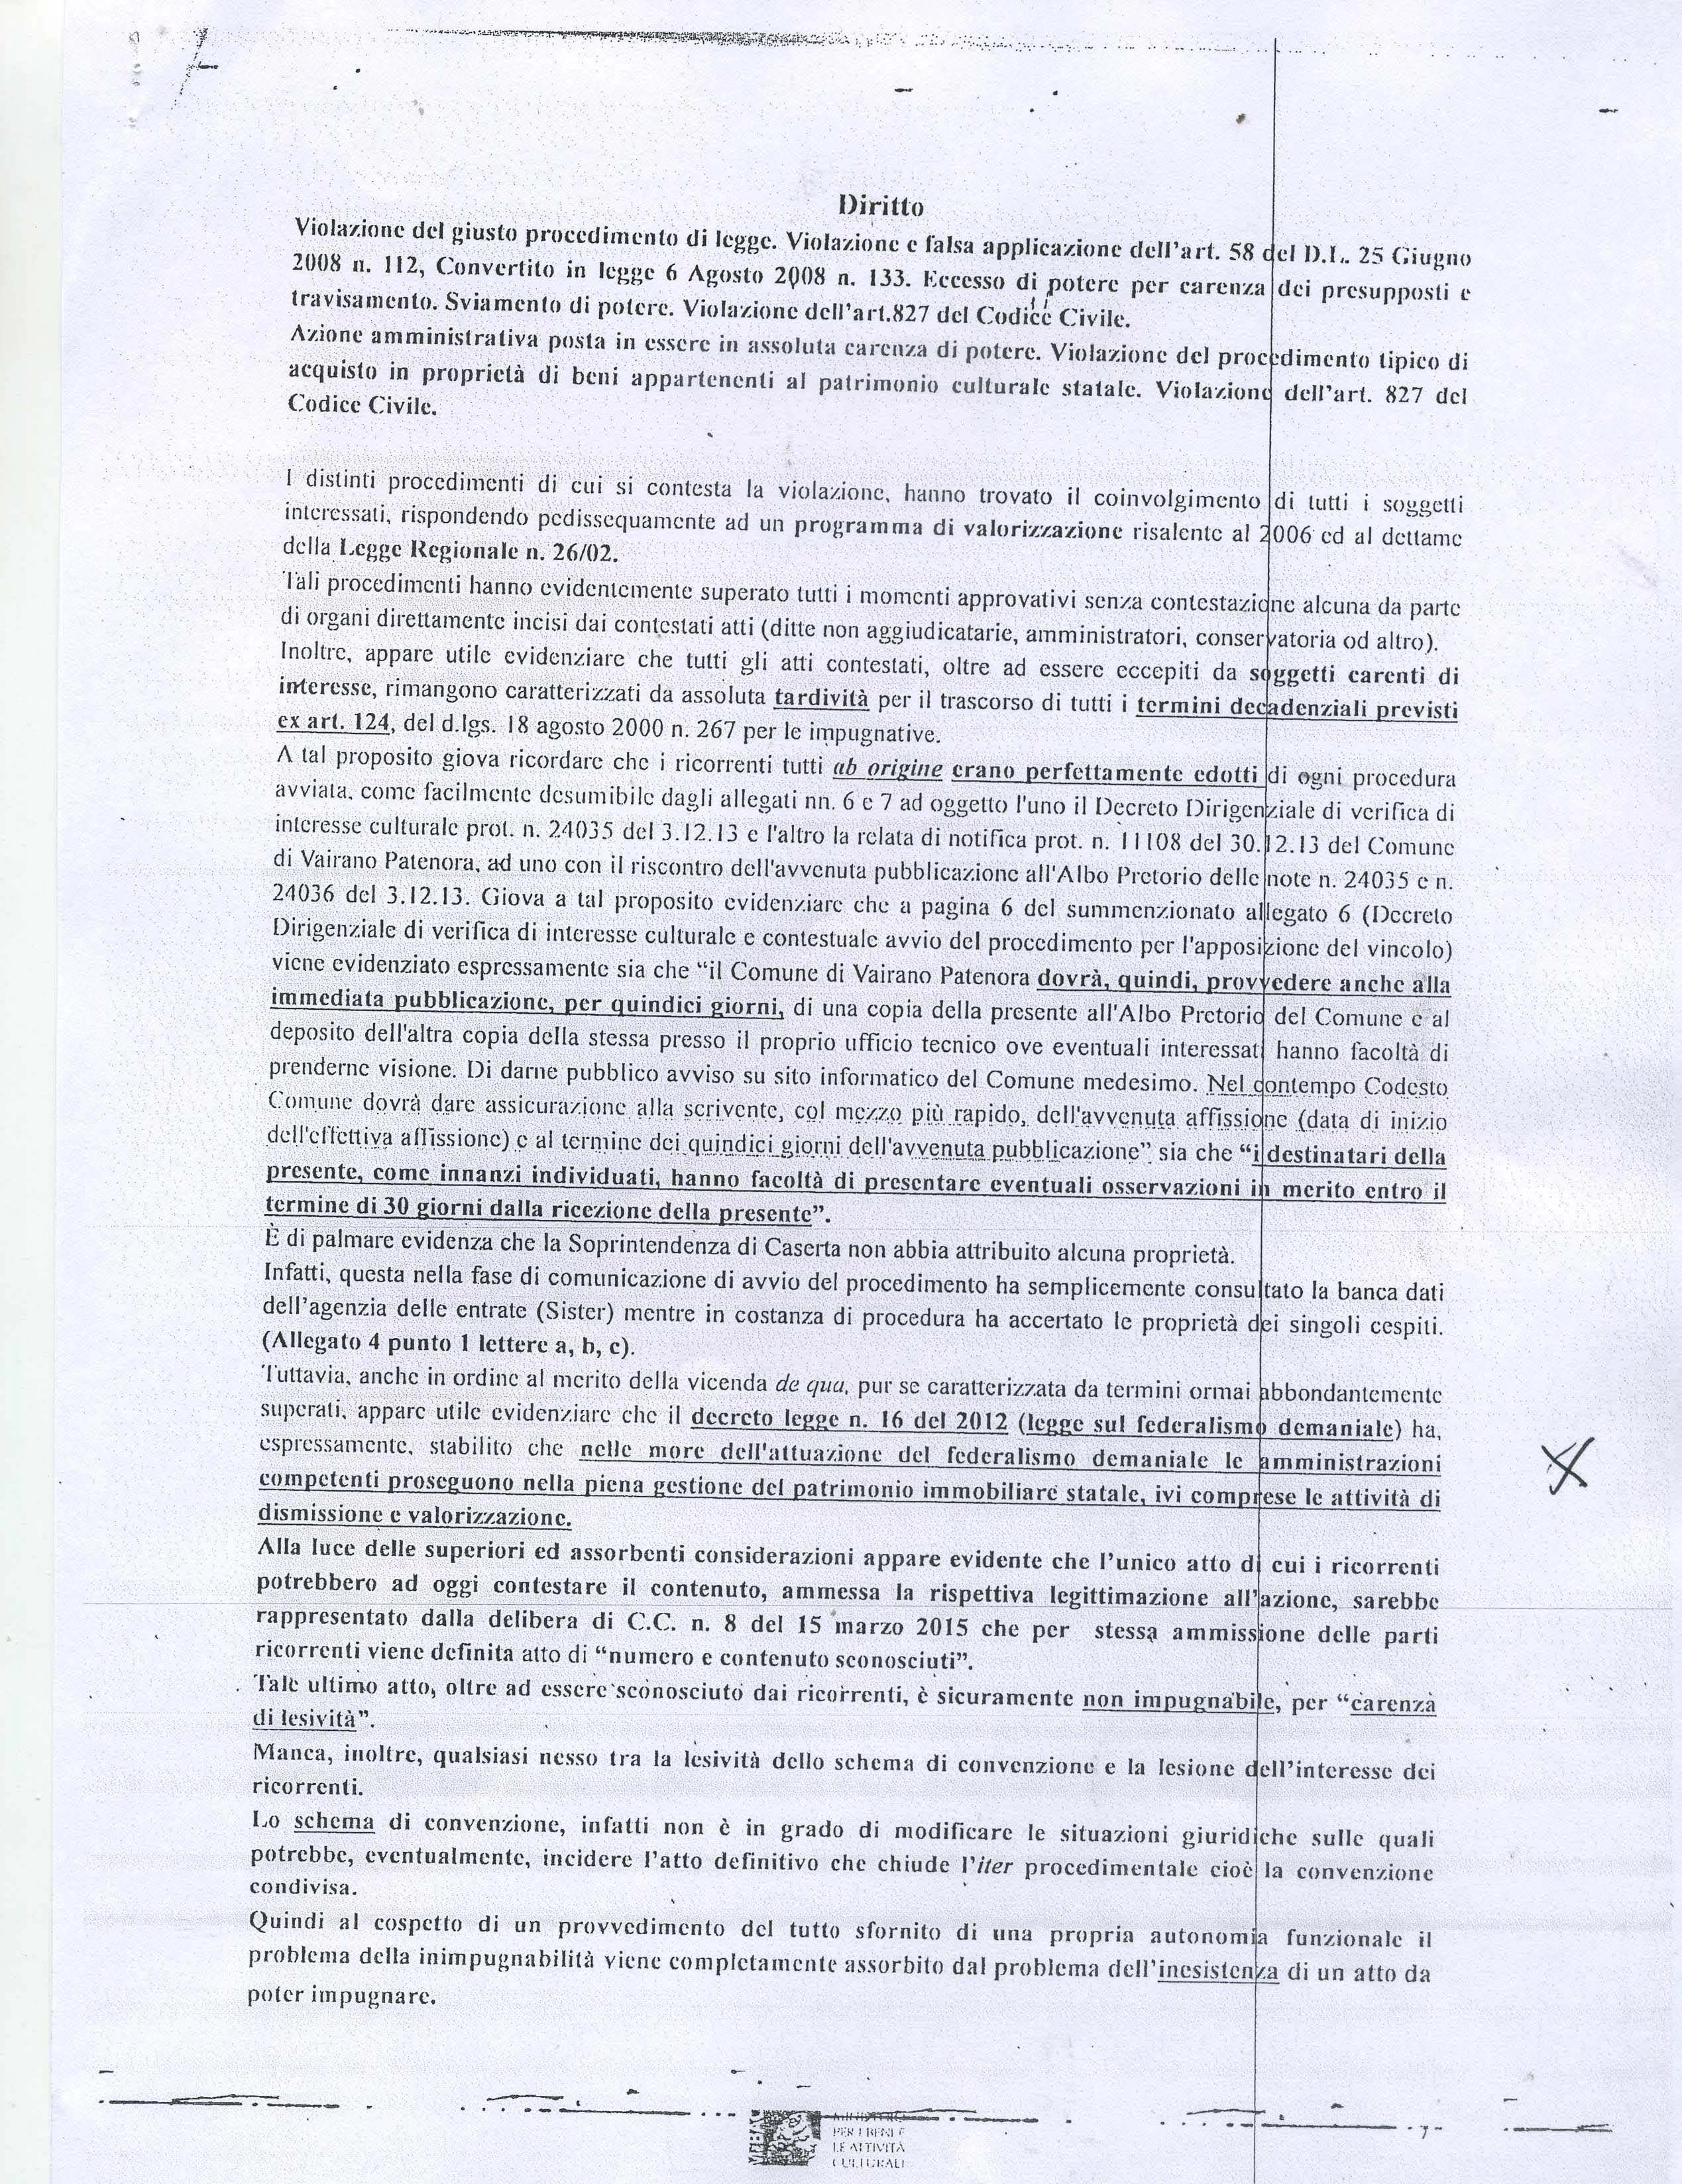 documento-completo-3mibact-su-castello-vairano-patenora_pagina_7